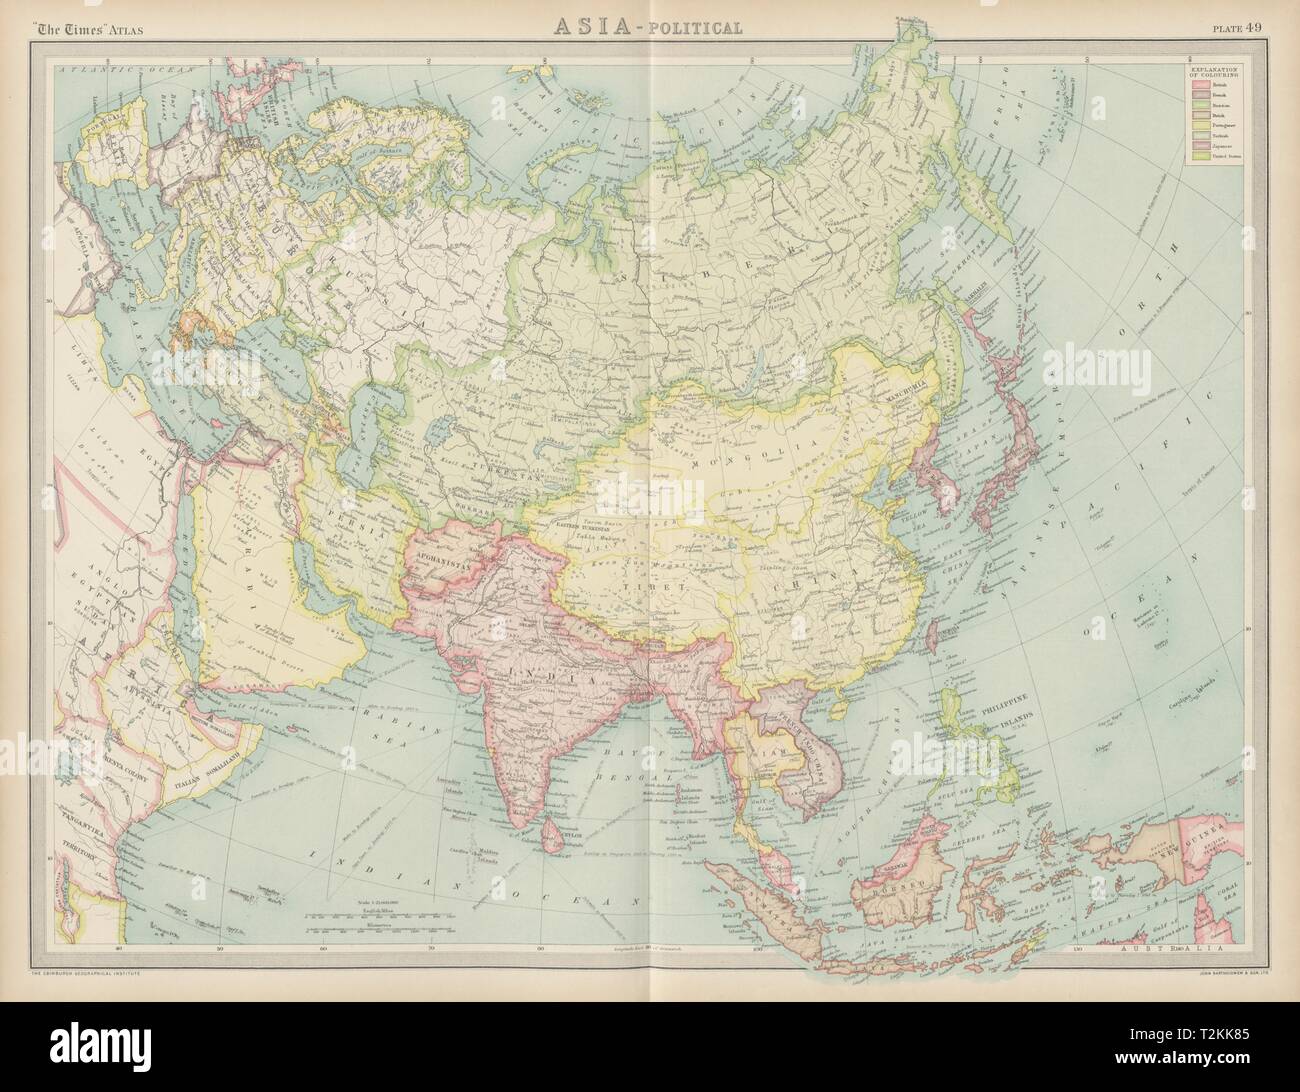 Politique de l'Asie. La Mongolie chinoise. L'Indochine française Japanese Korea Times 1922 map Banque D'Images